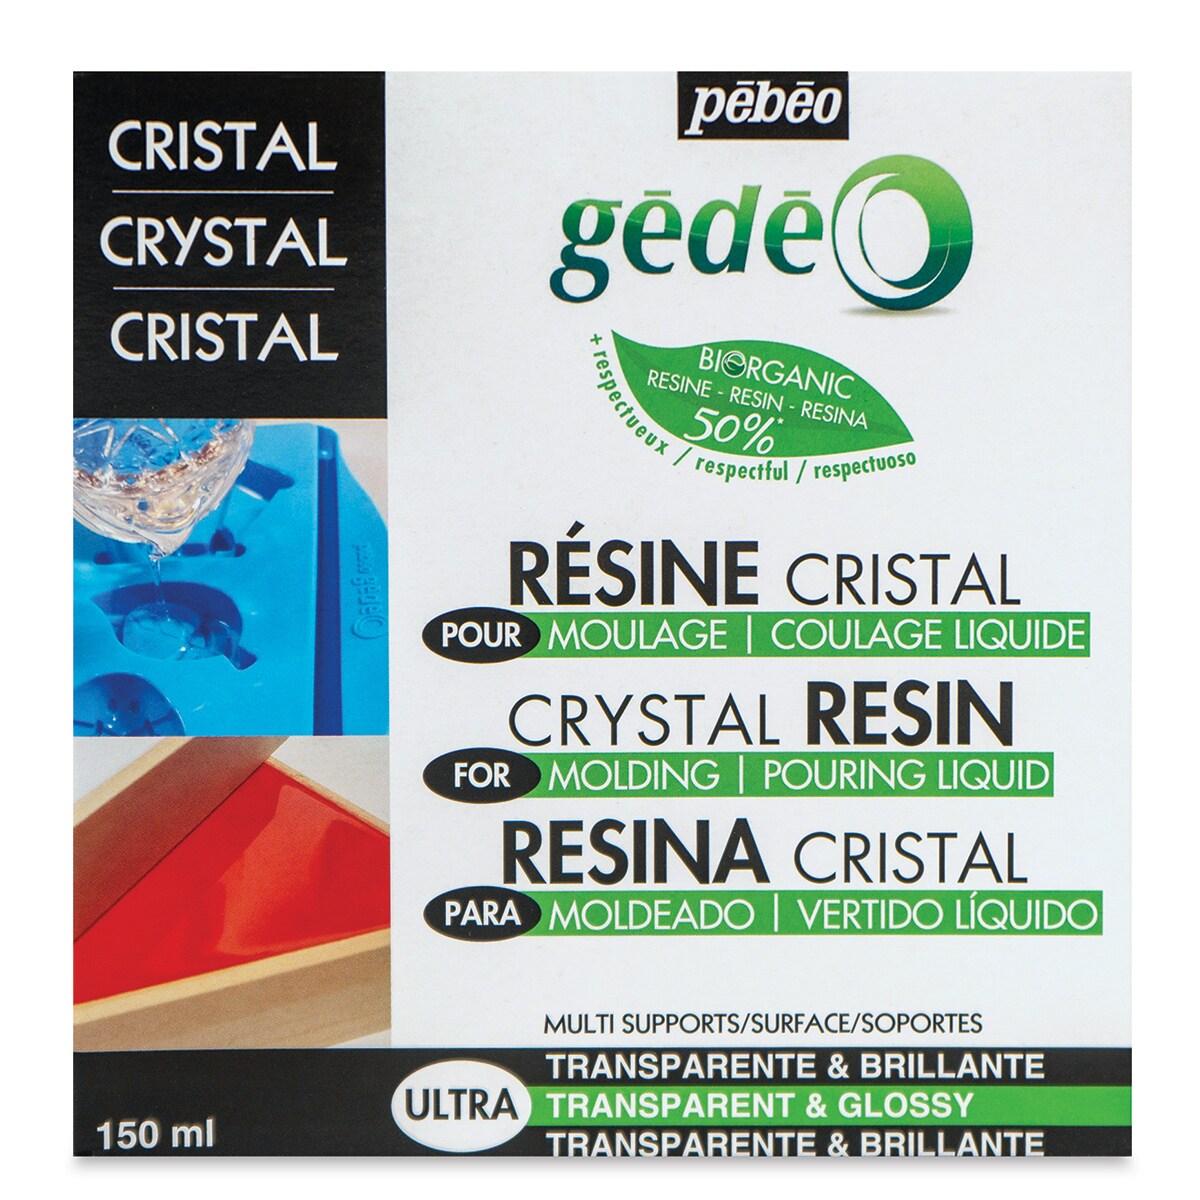 Pebeo Gedeo Bio-Based Resin - Crystal Resin, 150 ml